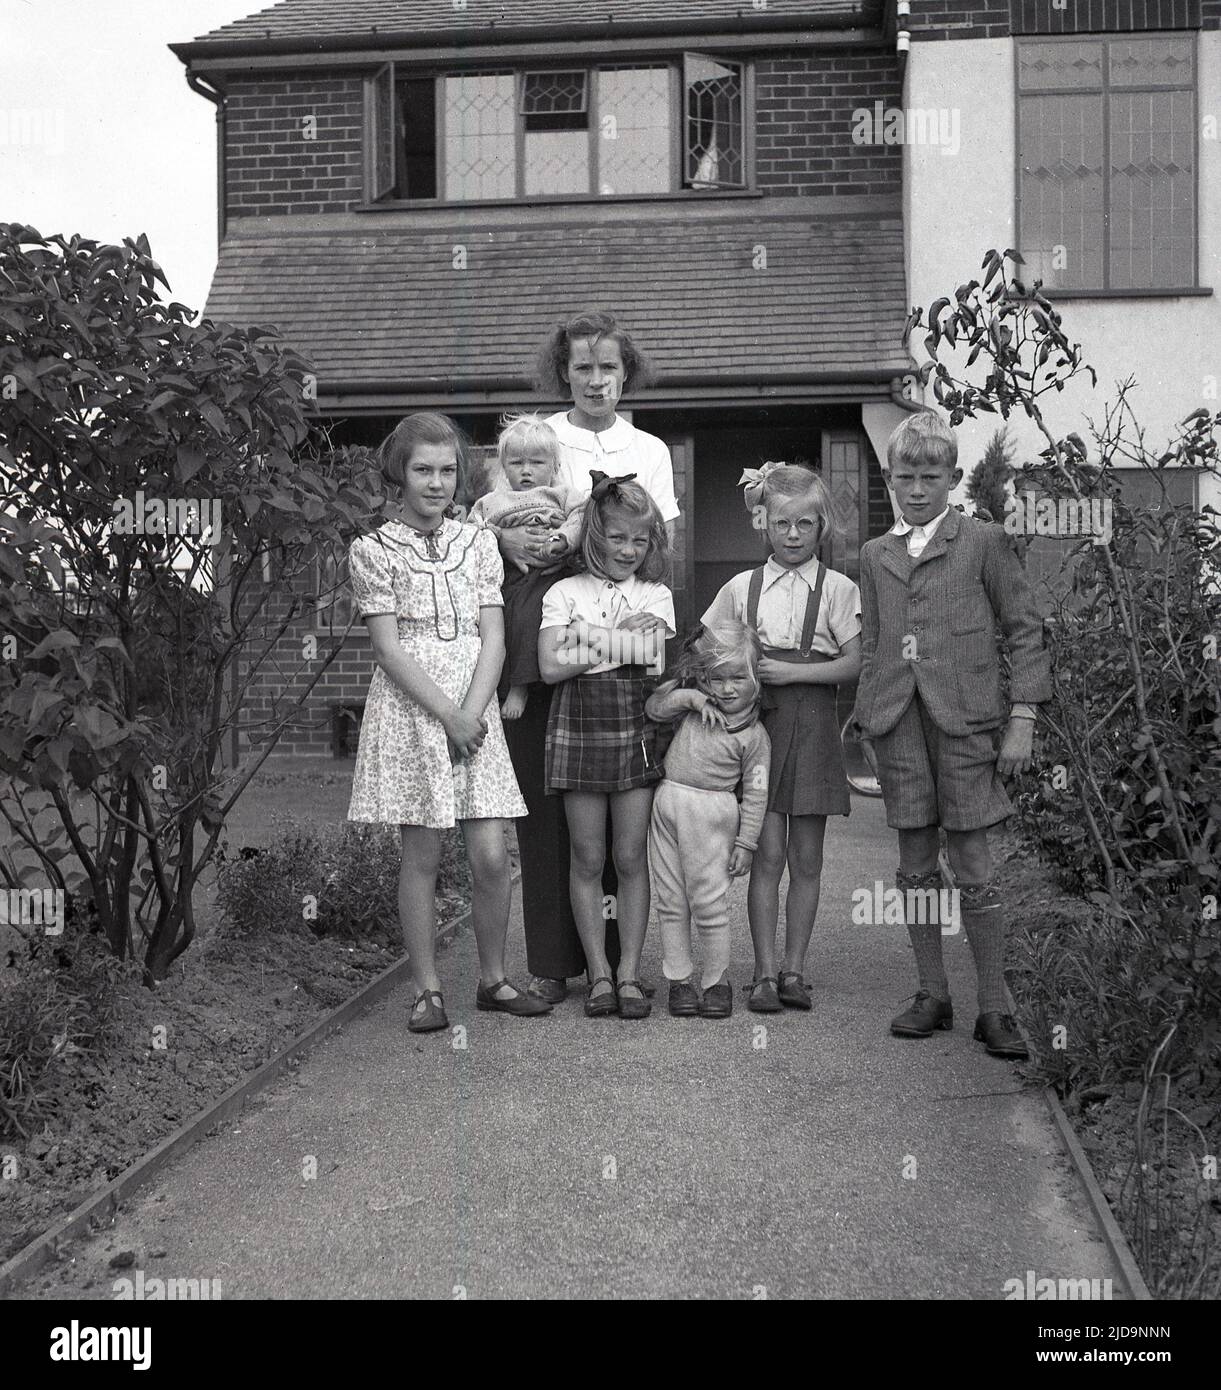 1940s, historique, une mère debout avec ses enfants pour une photo, sur le chemin d'entrée de leur maison sur Woodford Rd, près du village de Bramhall, une banlieue prospère de Stockport, Cheadle, Angleterre, Royaume-Uni. Banque D'Images